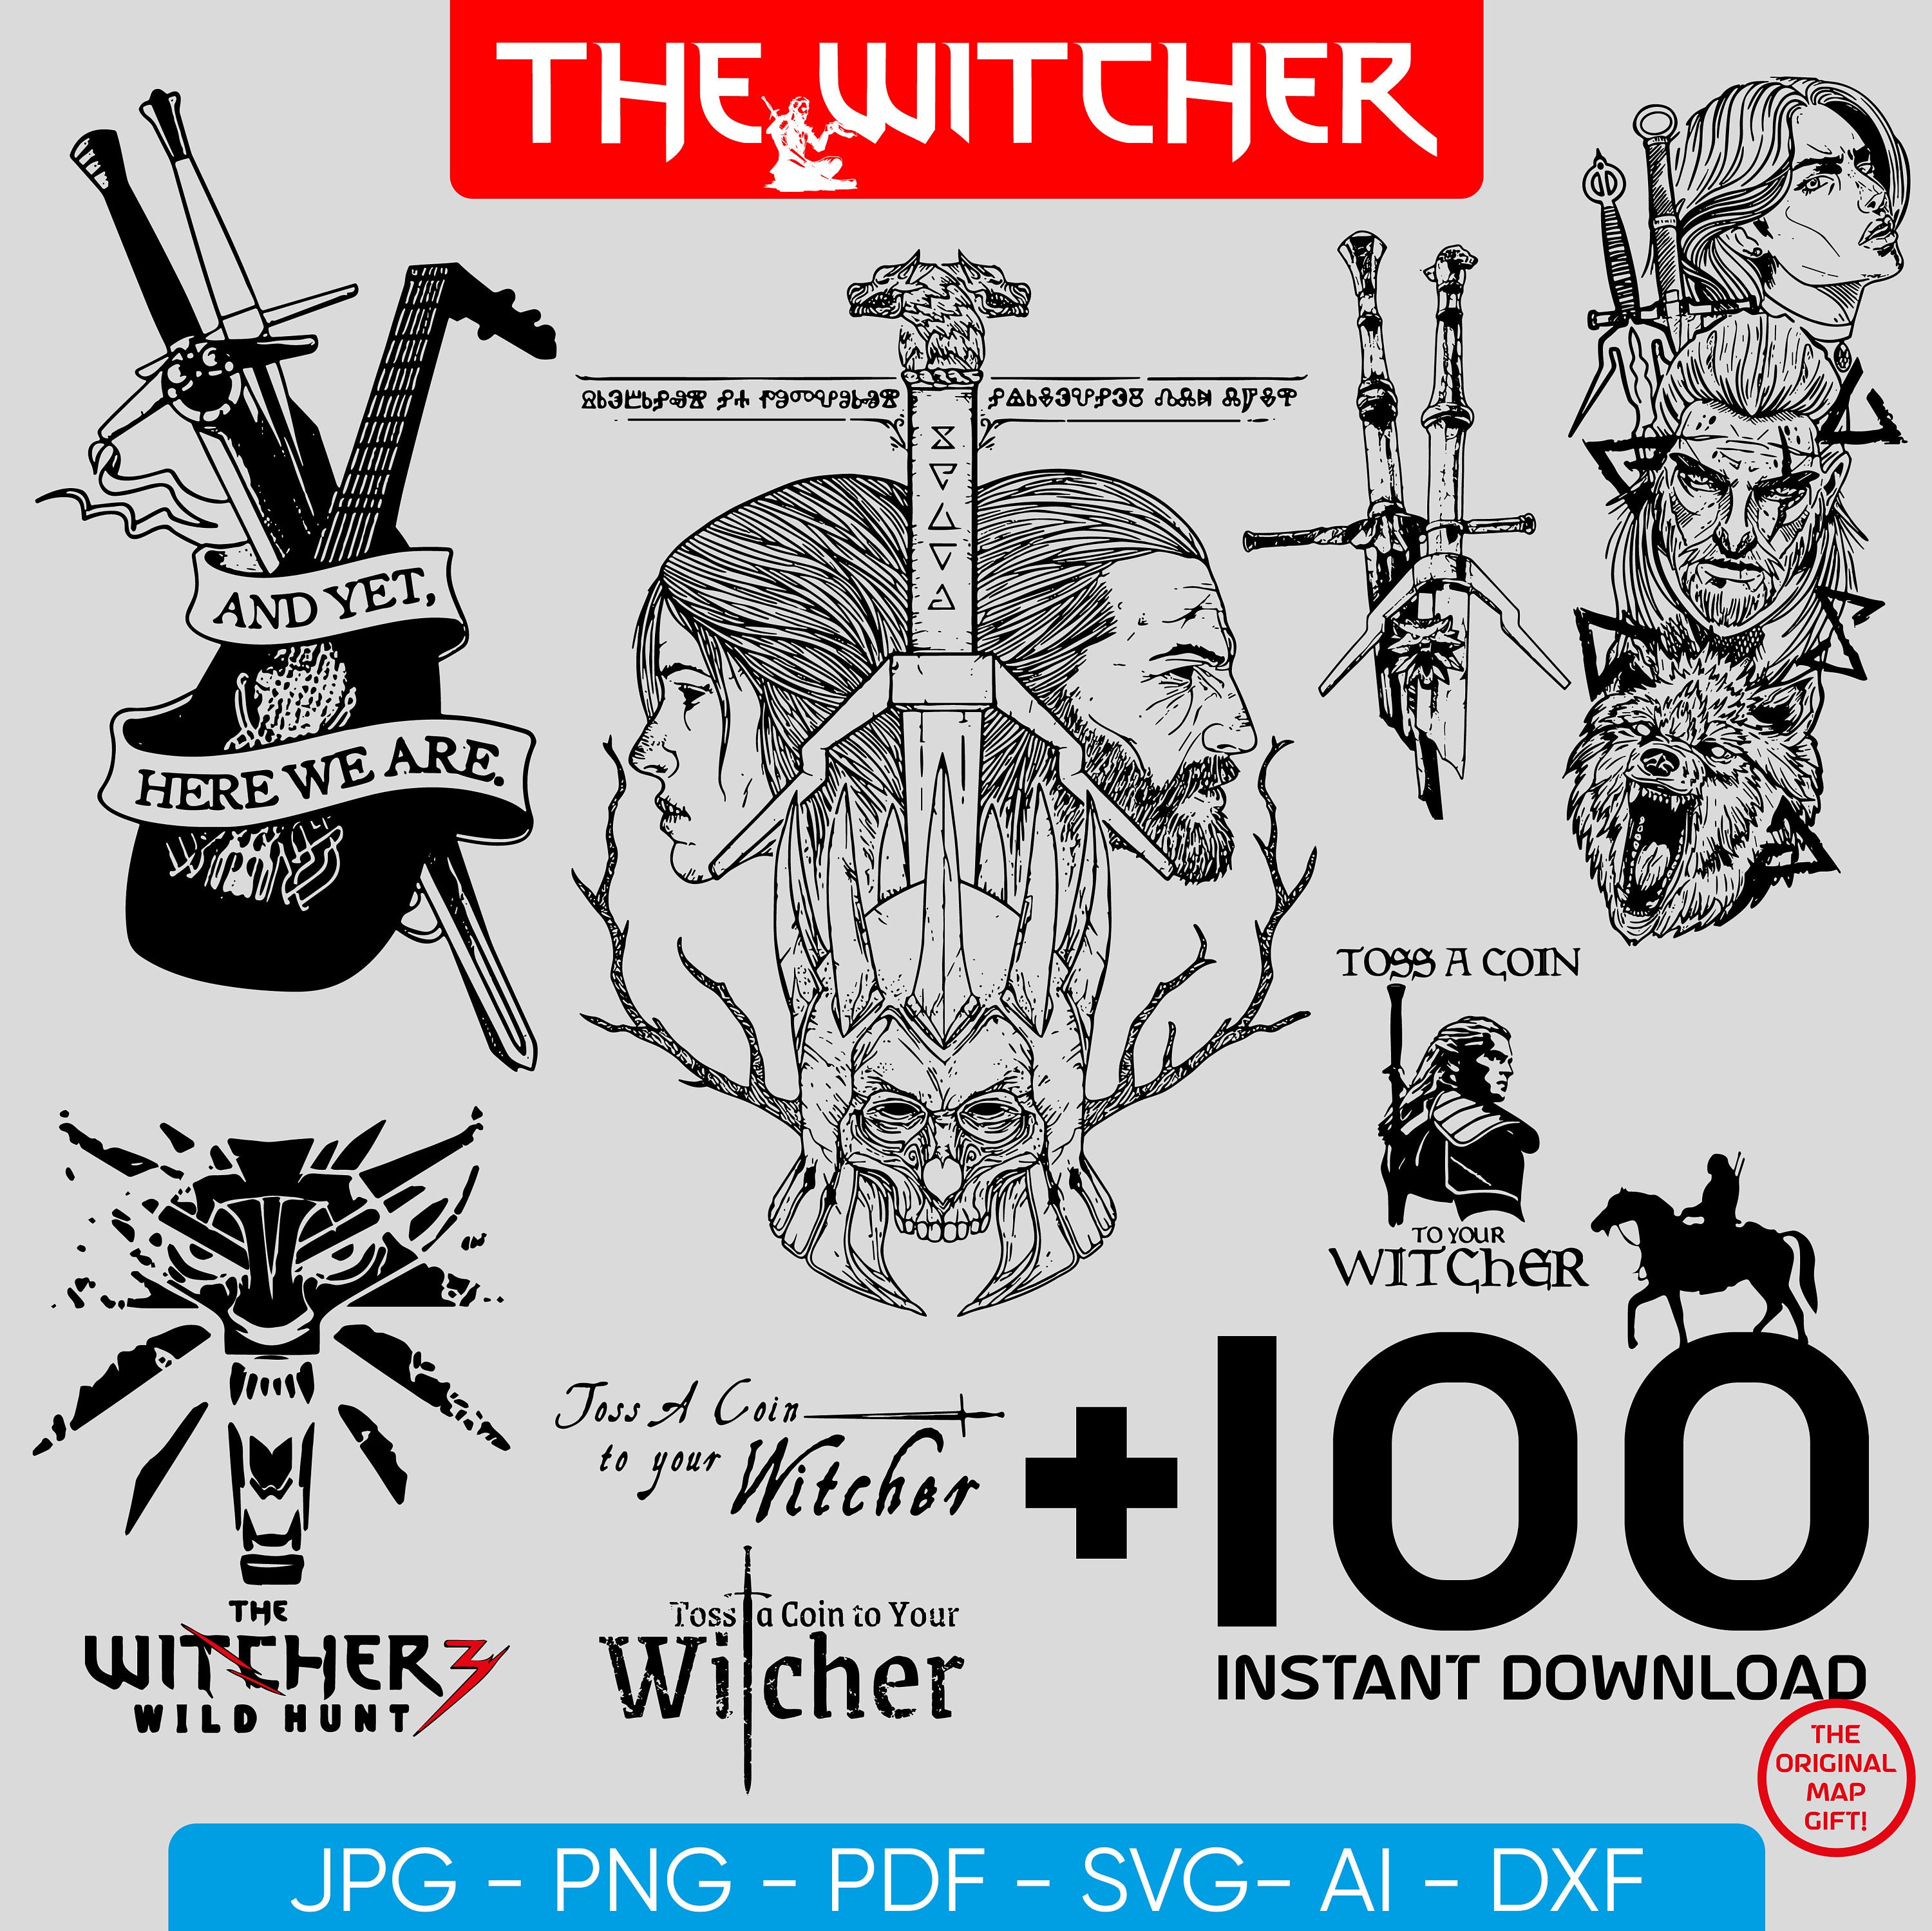 The Witcher 3: Wild Hunt: confira as novidades do patch 4.40